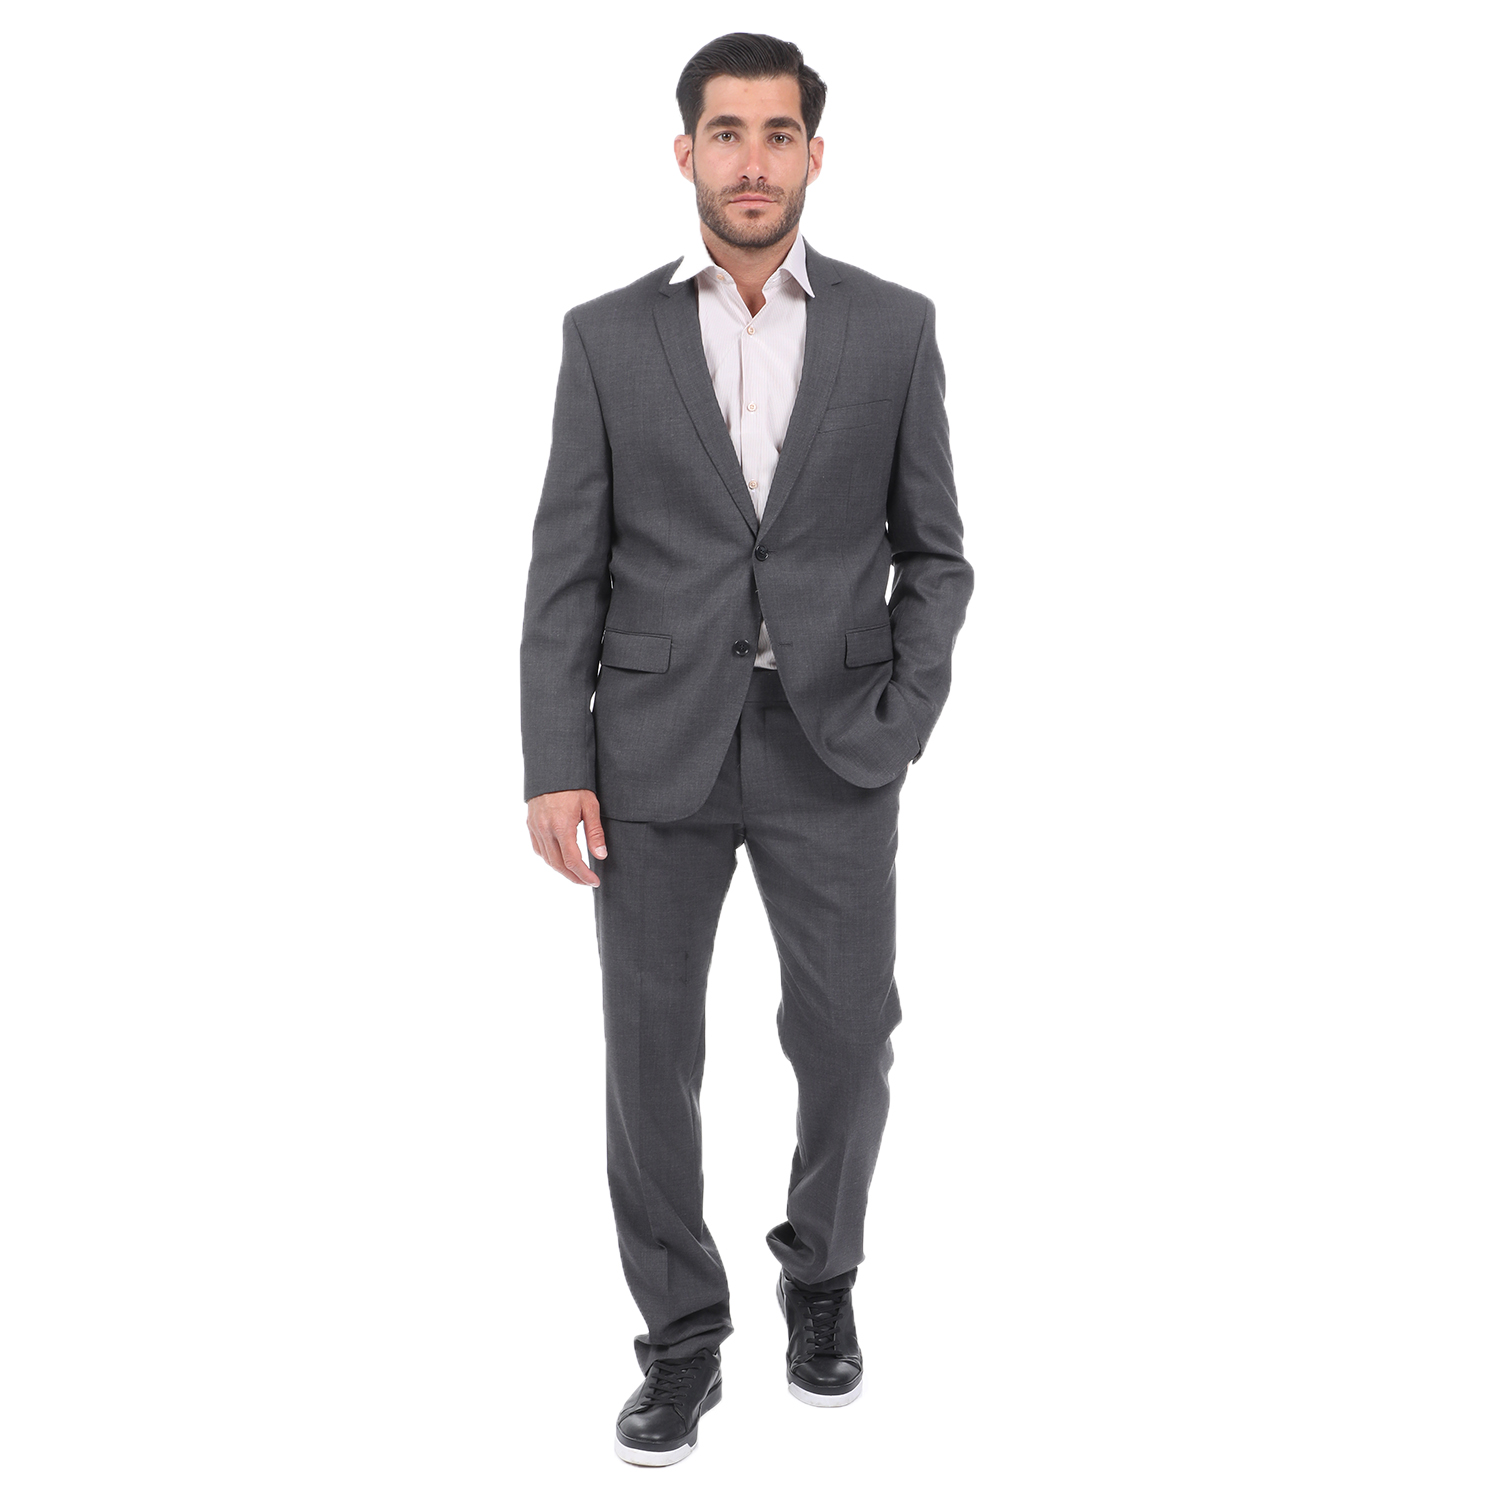 Ανδρικά/Ρούχα/Πανωφόρια/Σακάκια MARTIN & CO - Ανδρικό κοστούμι MARTIN & CO REGULAR γκρι